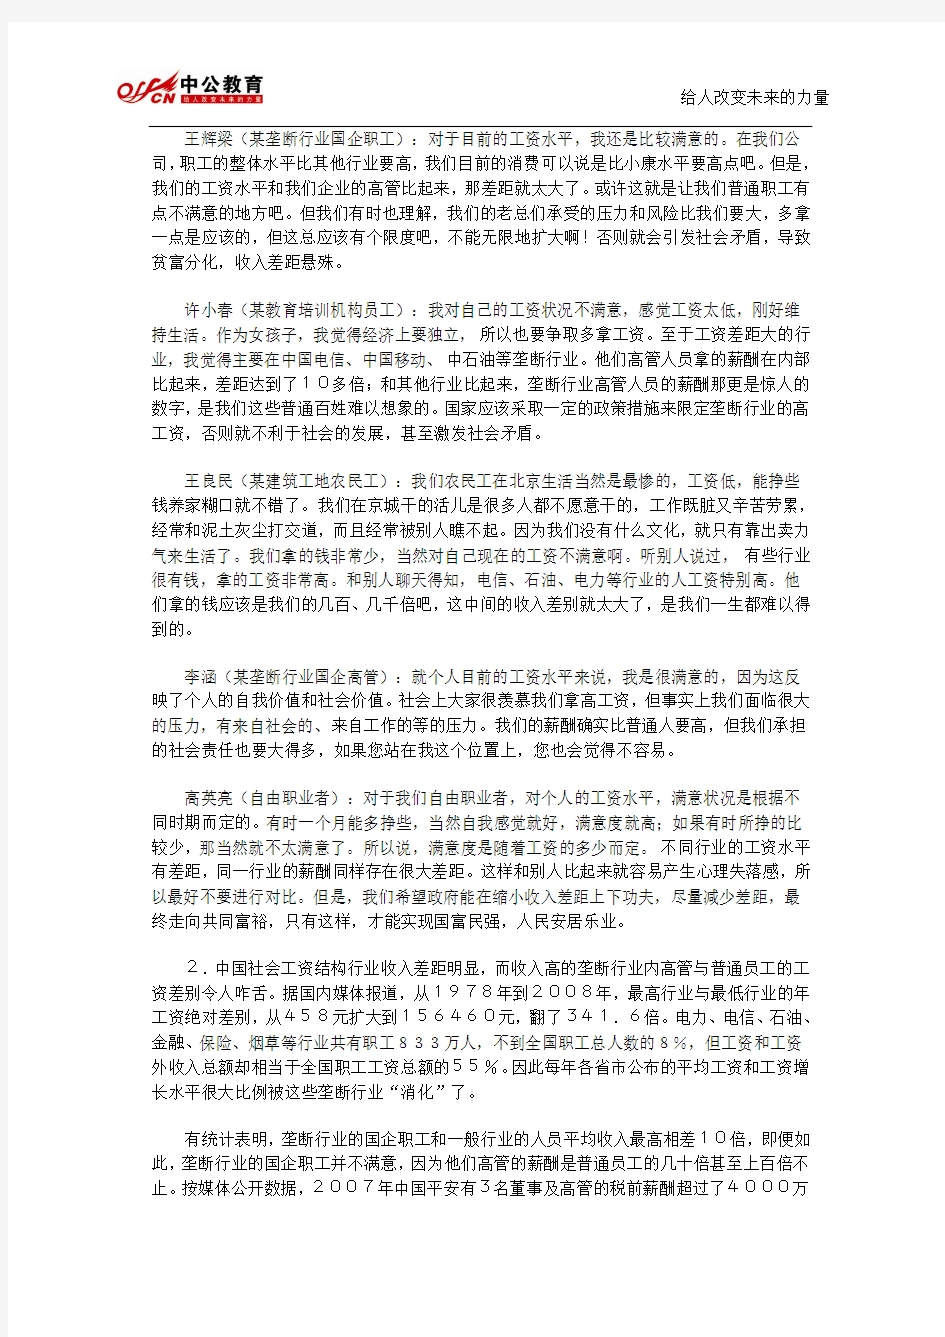 2013年安徽省公务员考试申论贯彻执行模拟试题二